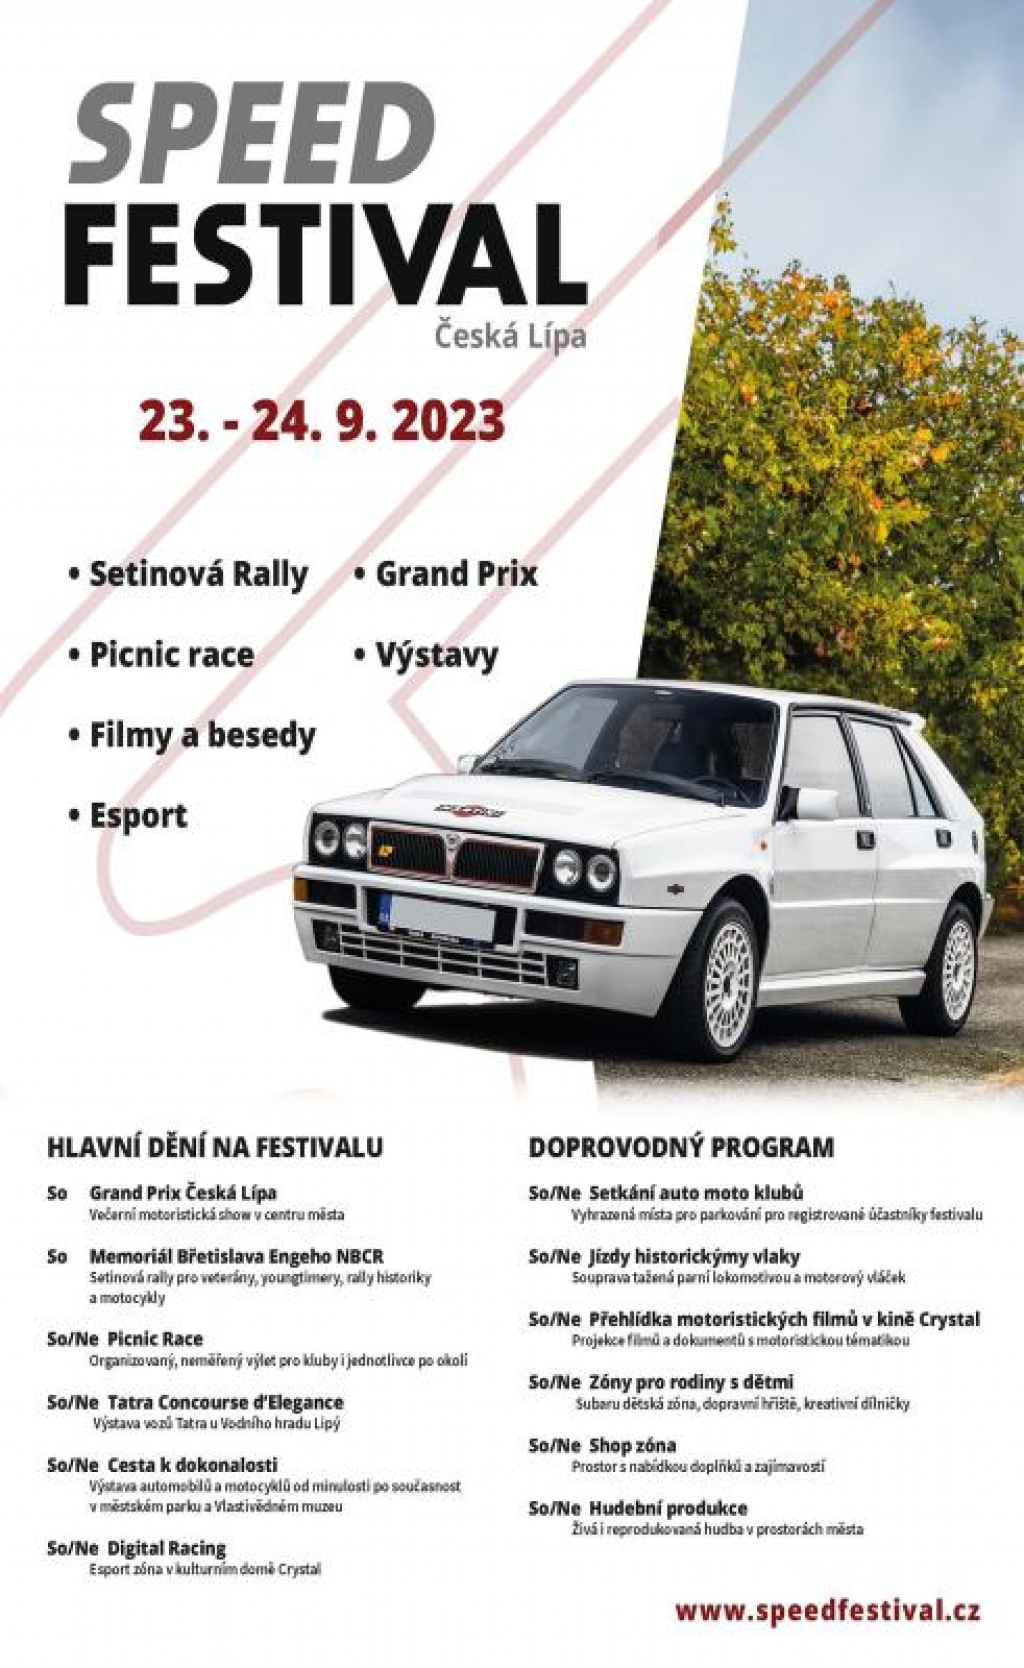 Speed Festival Česká Lípa 2023